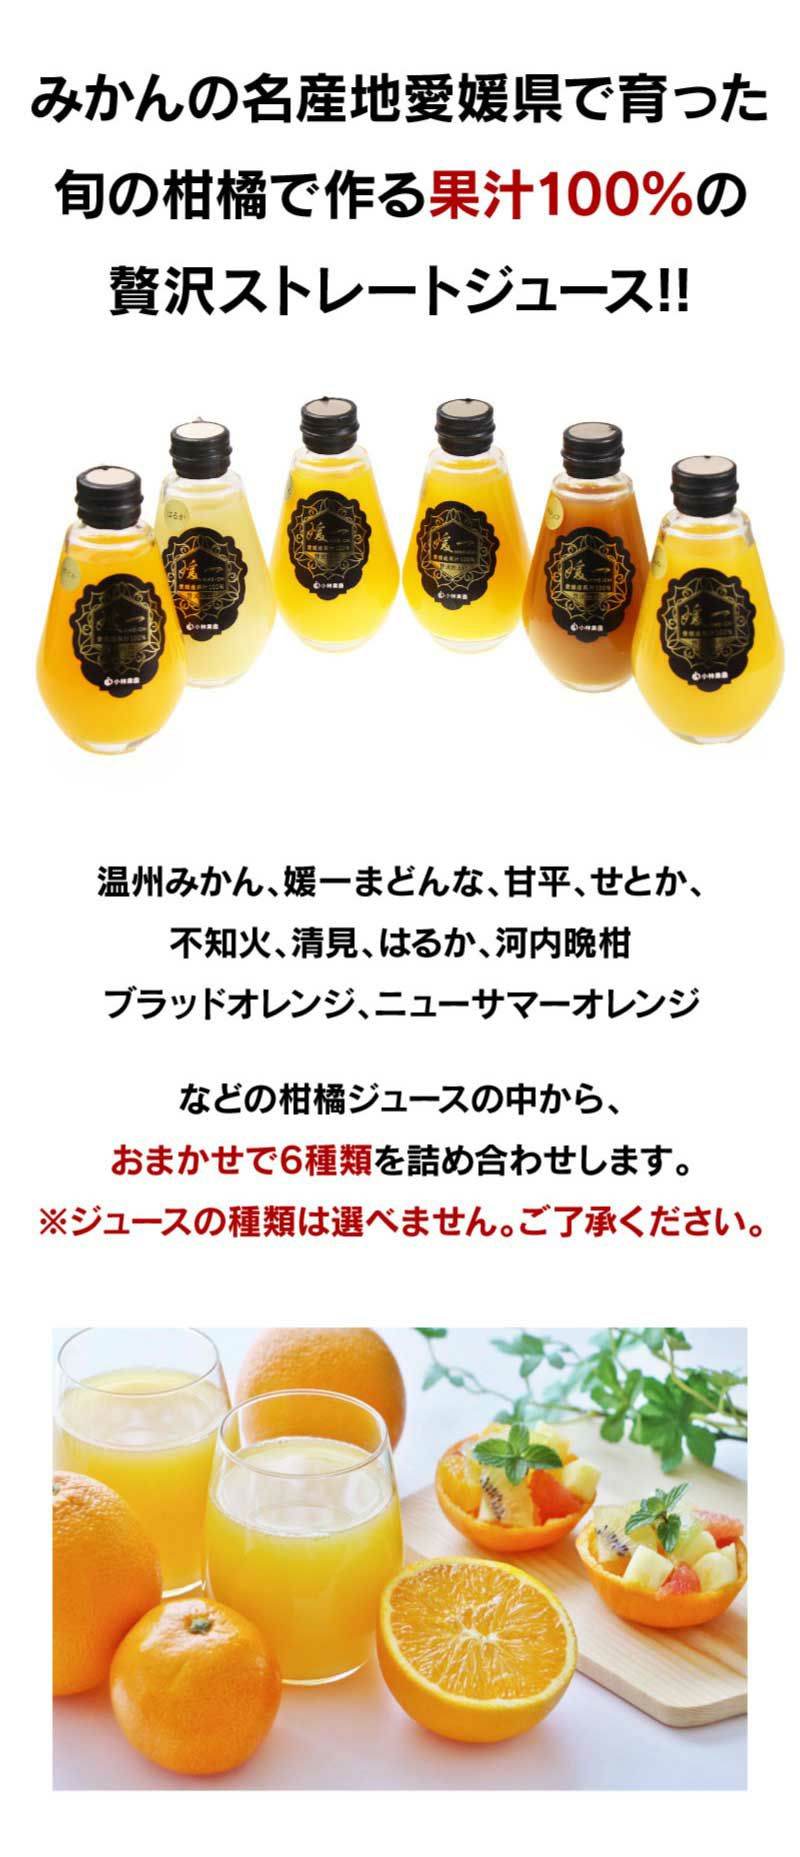 愛媛県産うわごーるどジュース 720ml 12本セット - 酒